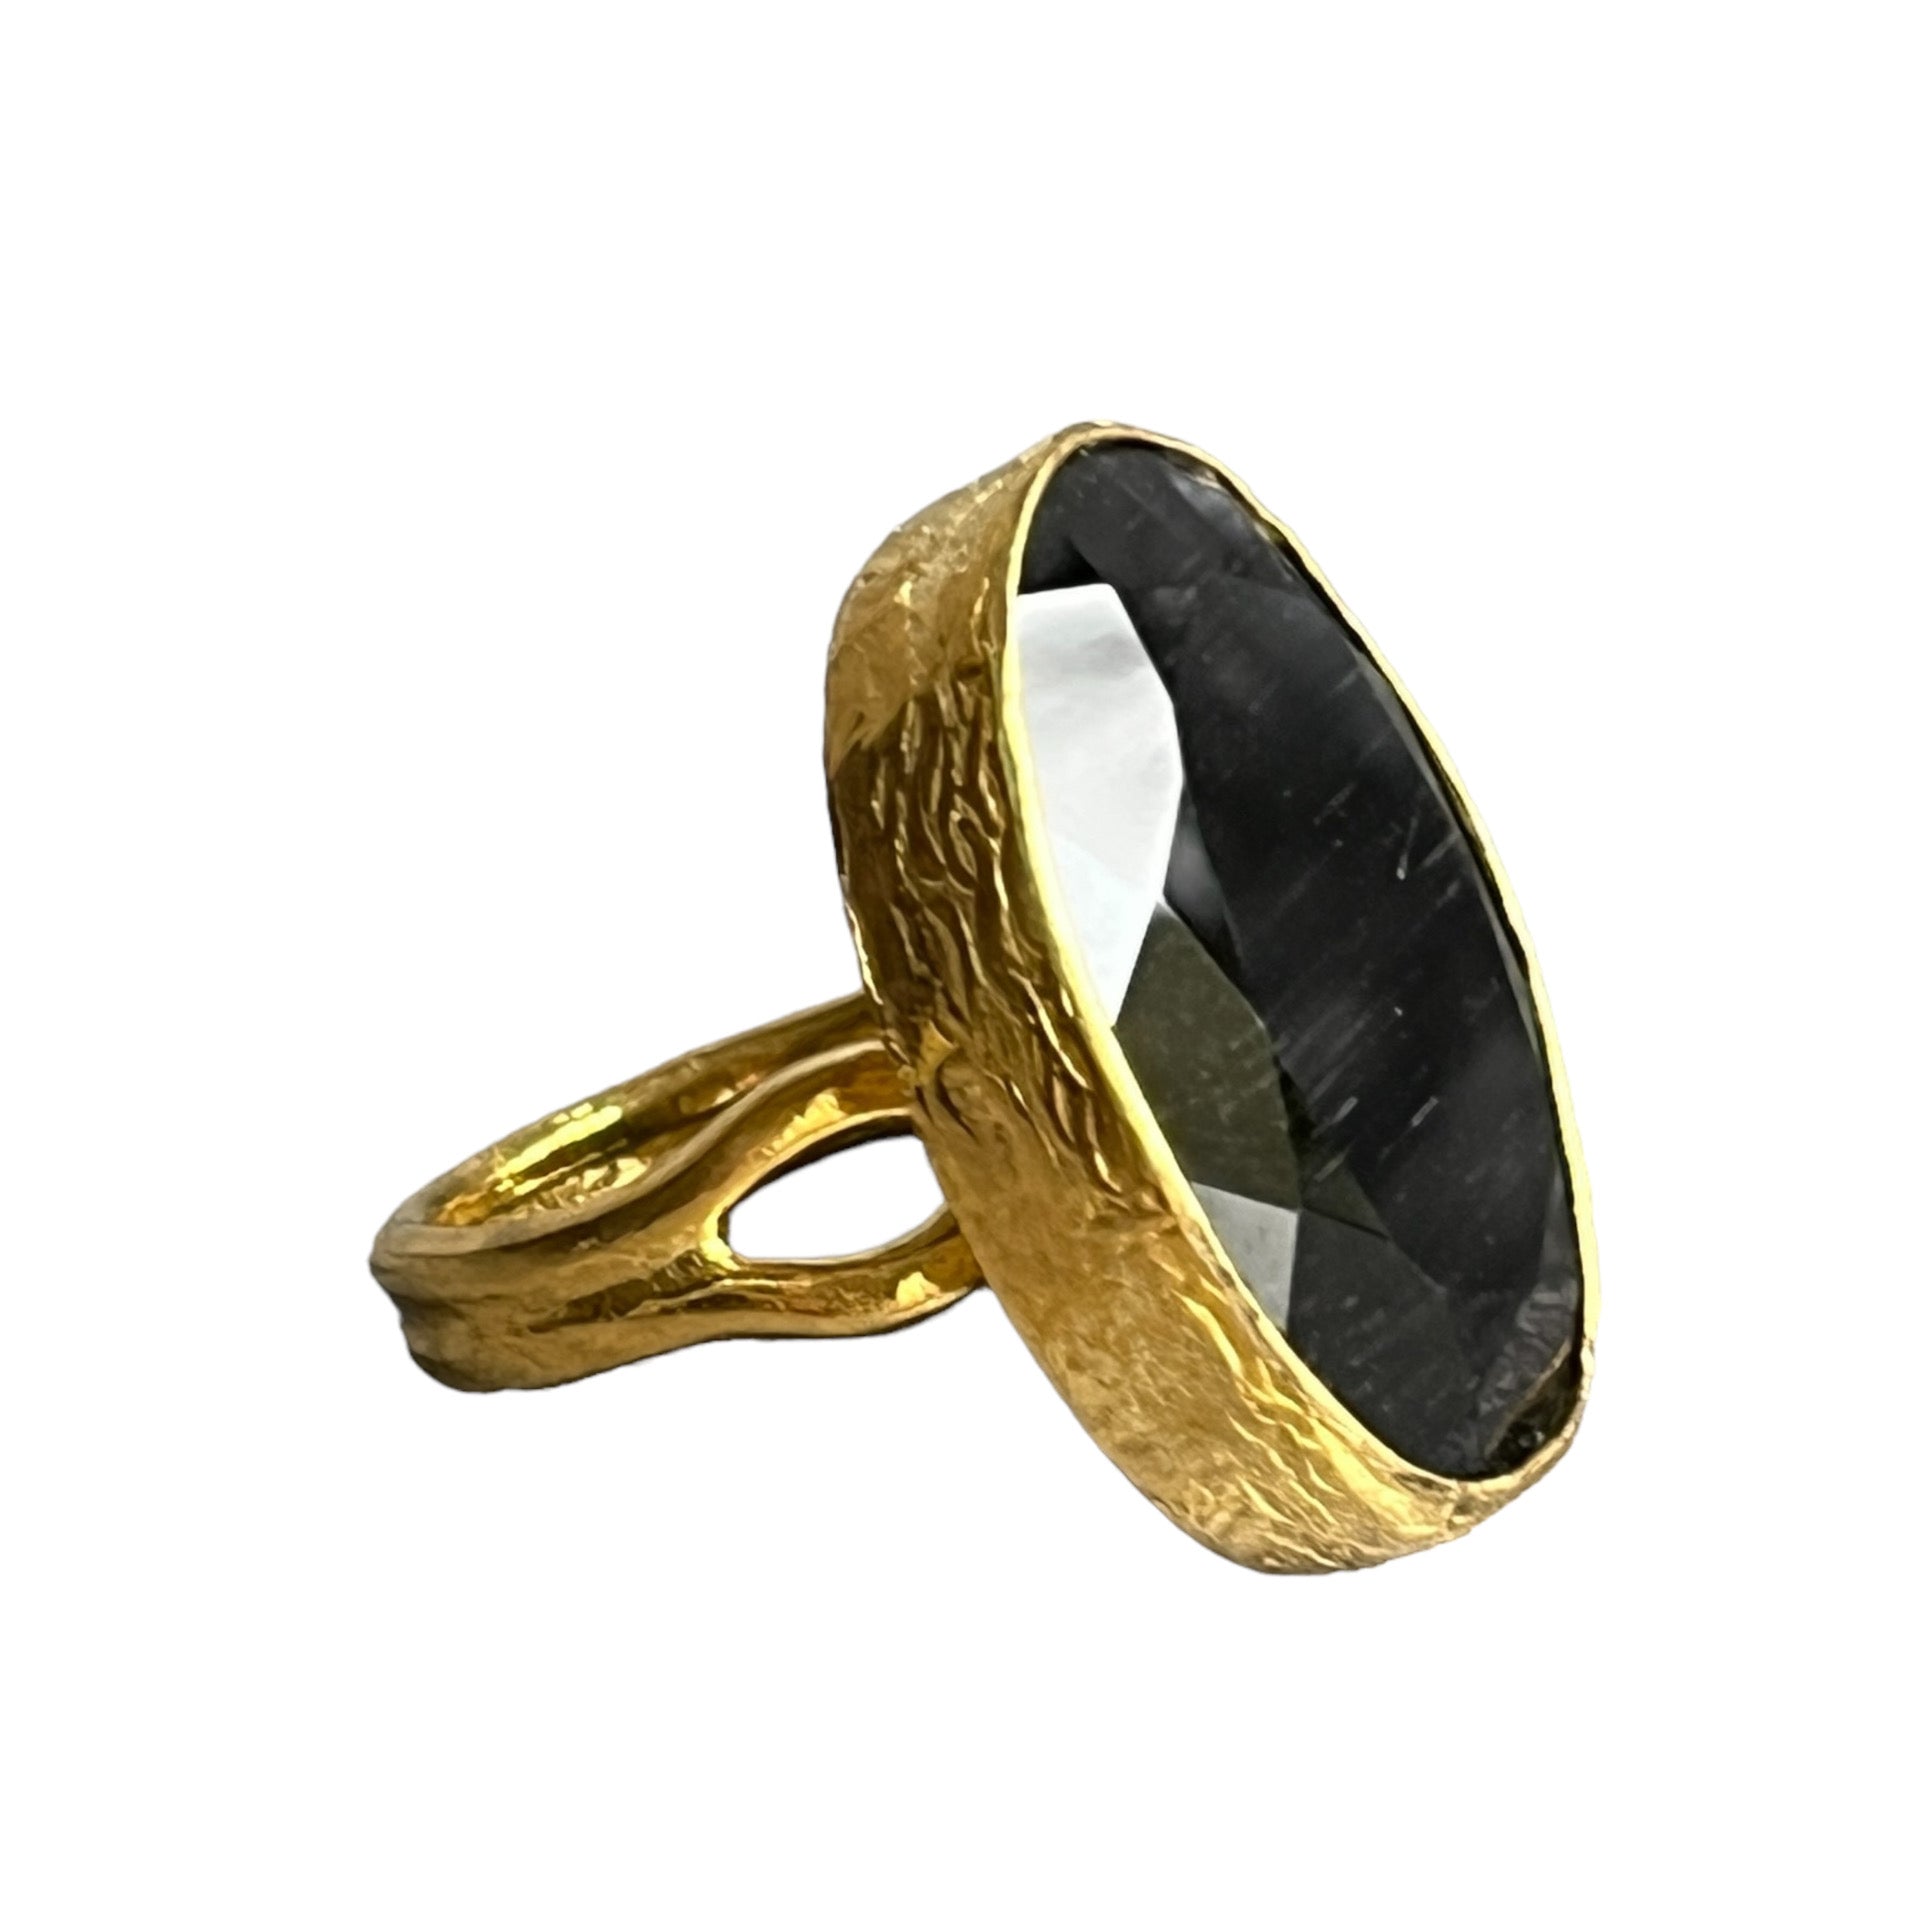 bague-femme-pierre-agate-noire-naturelle-doree-tourmalyn-bijoux